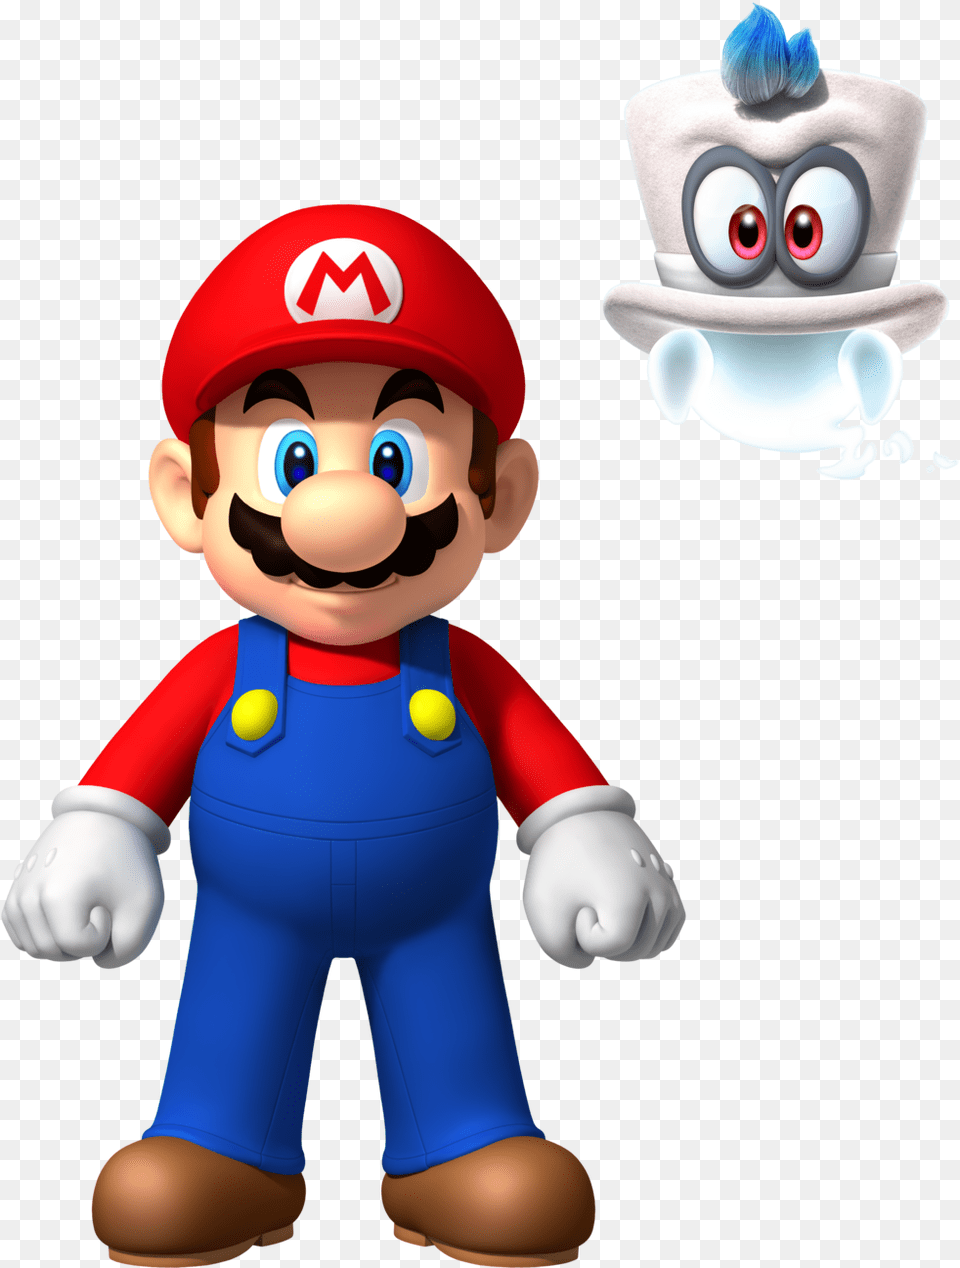 Mario And By Banjo Mario New Super Mario Bros Wii, Baby, Person, Game, Super Mario Free Png Download